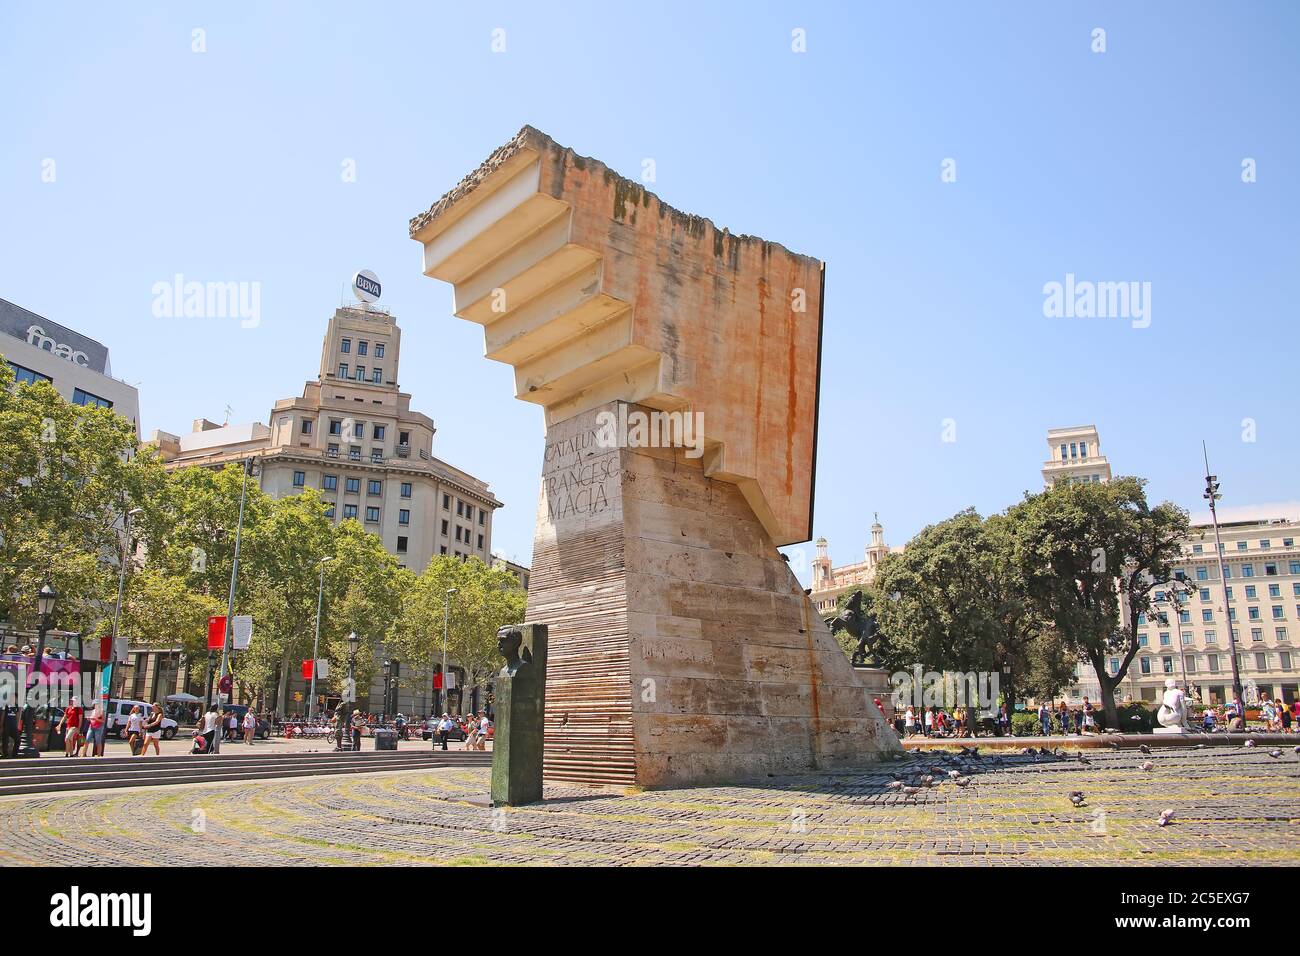 Belle sculpture au centre de la ville dans le centre-ville, Plaça de Catalunya ou place de Catalogne, Barcelone, Espagne. Banque D'Images